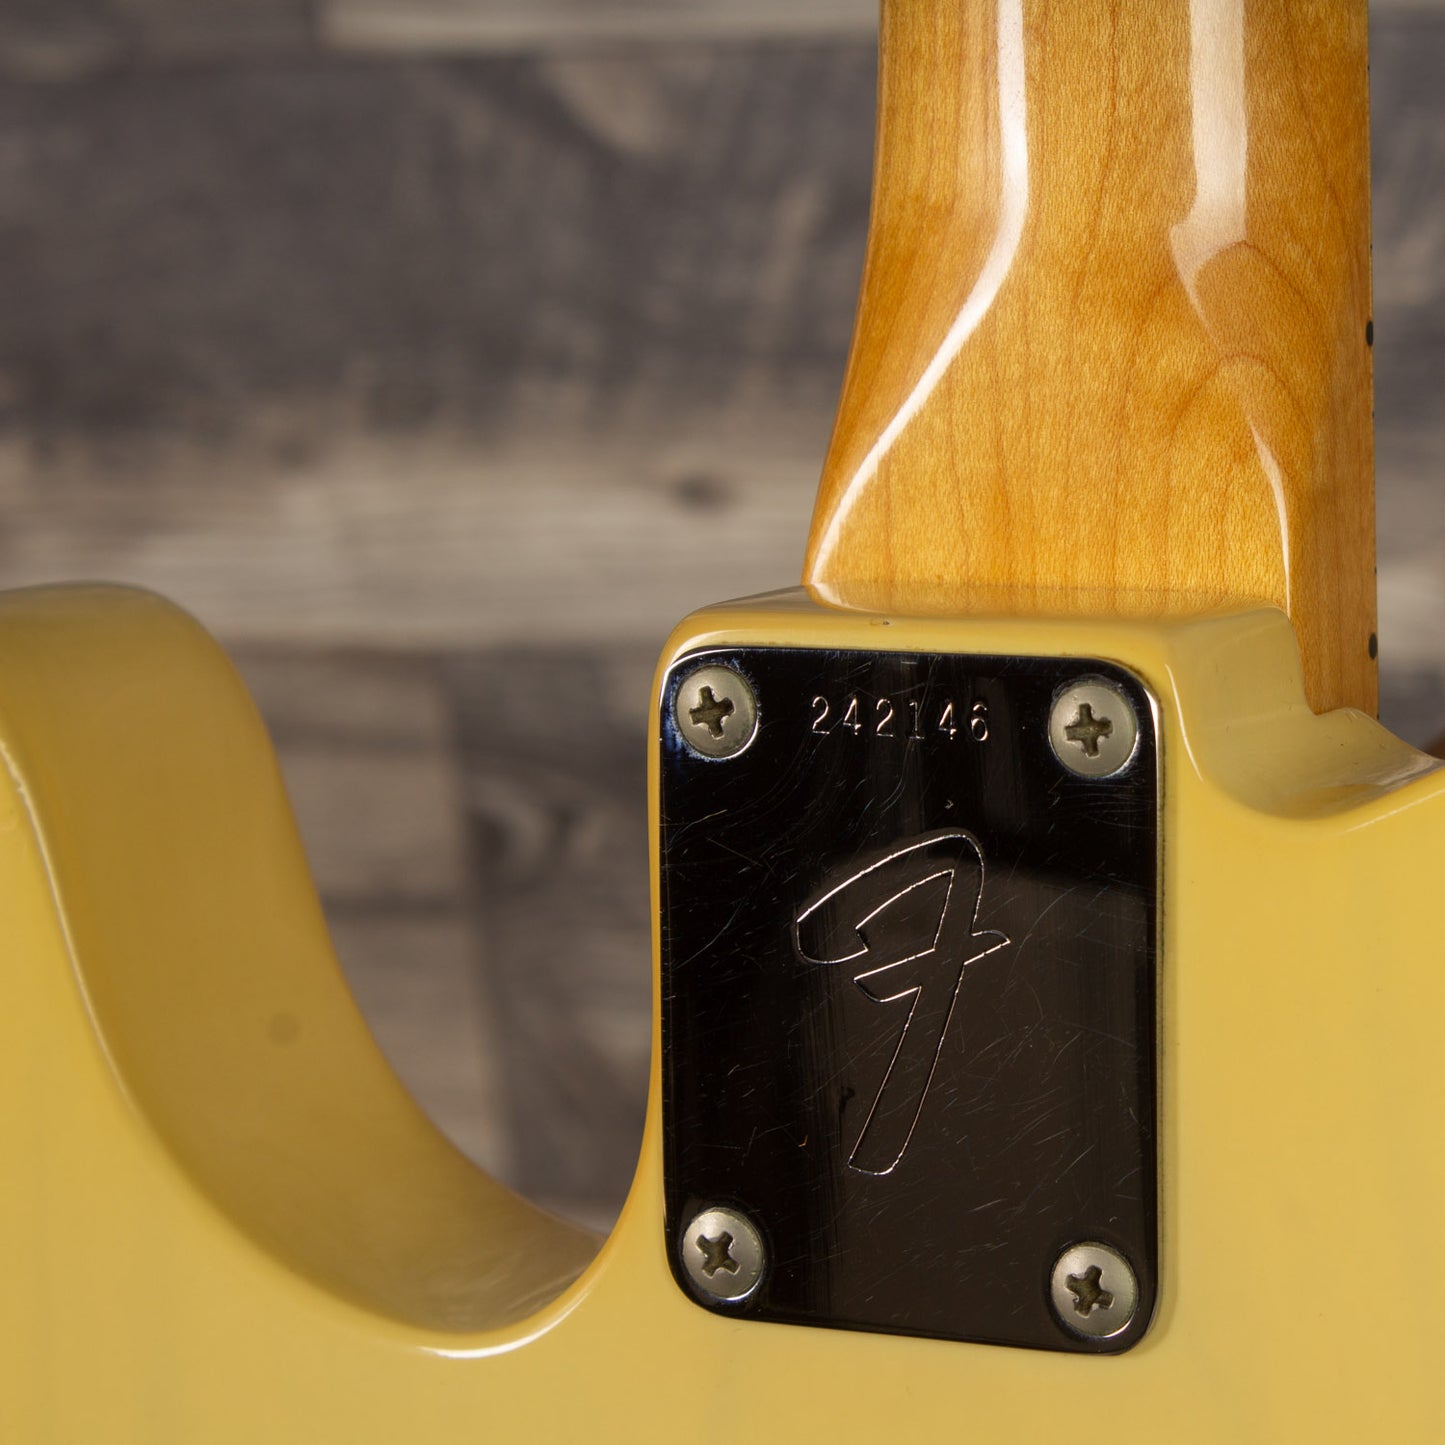 1968 Fender Telecaster-Maple cap